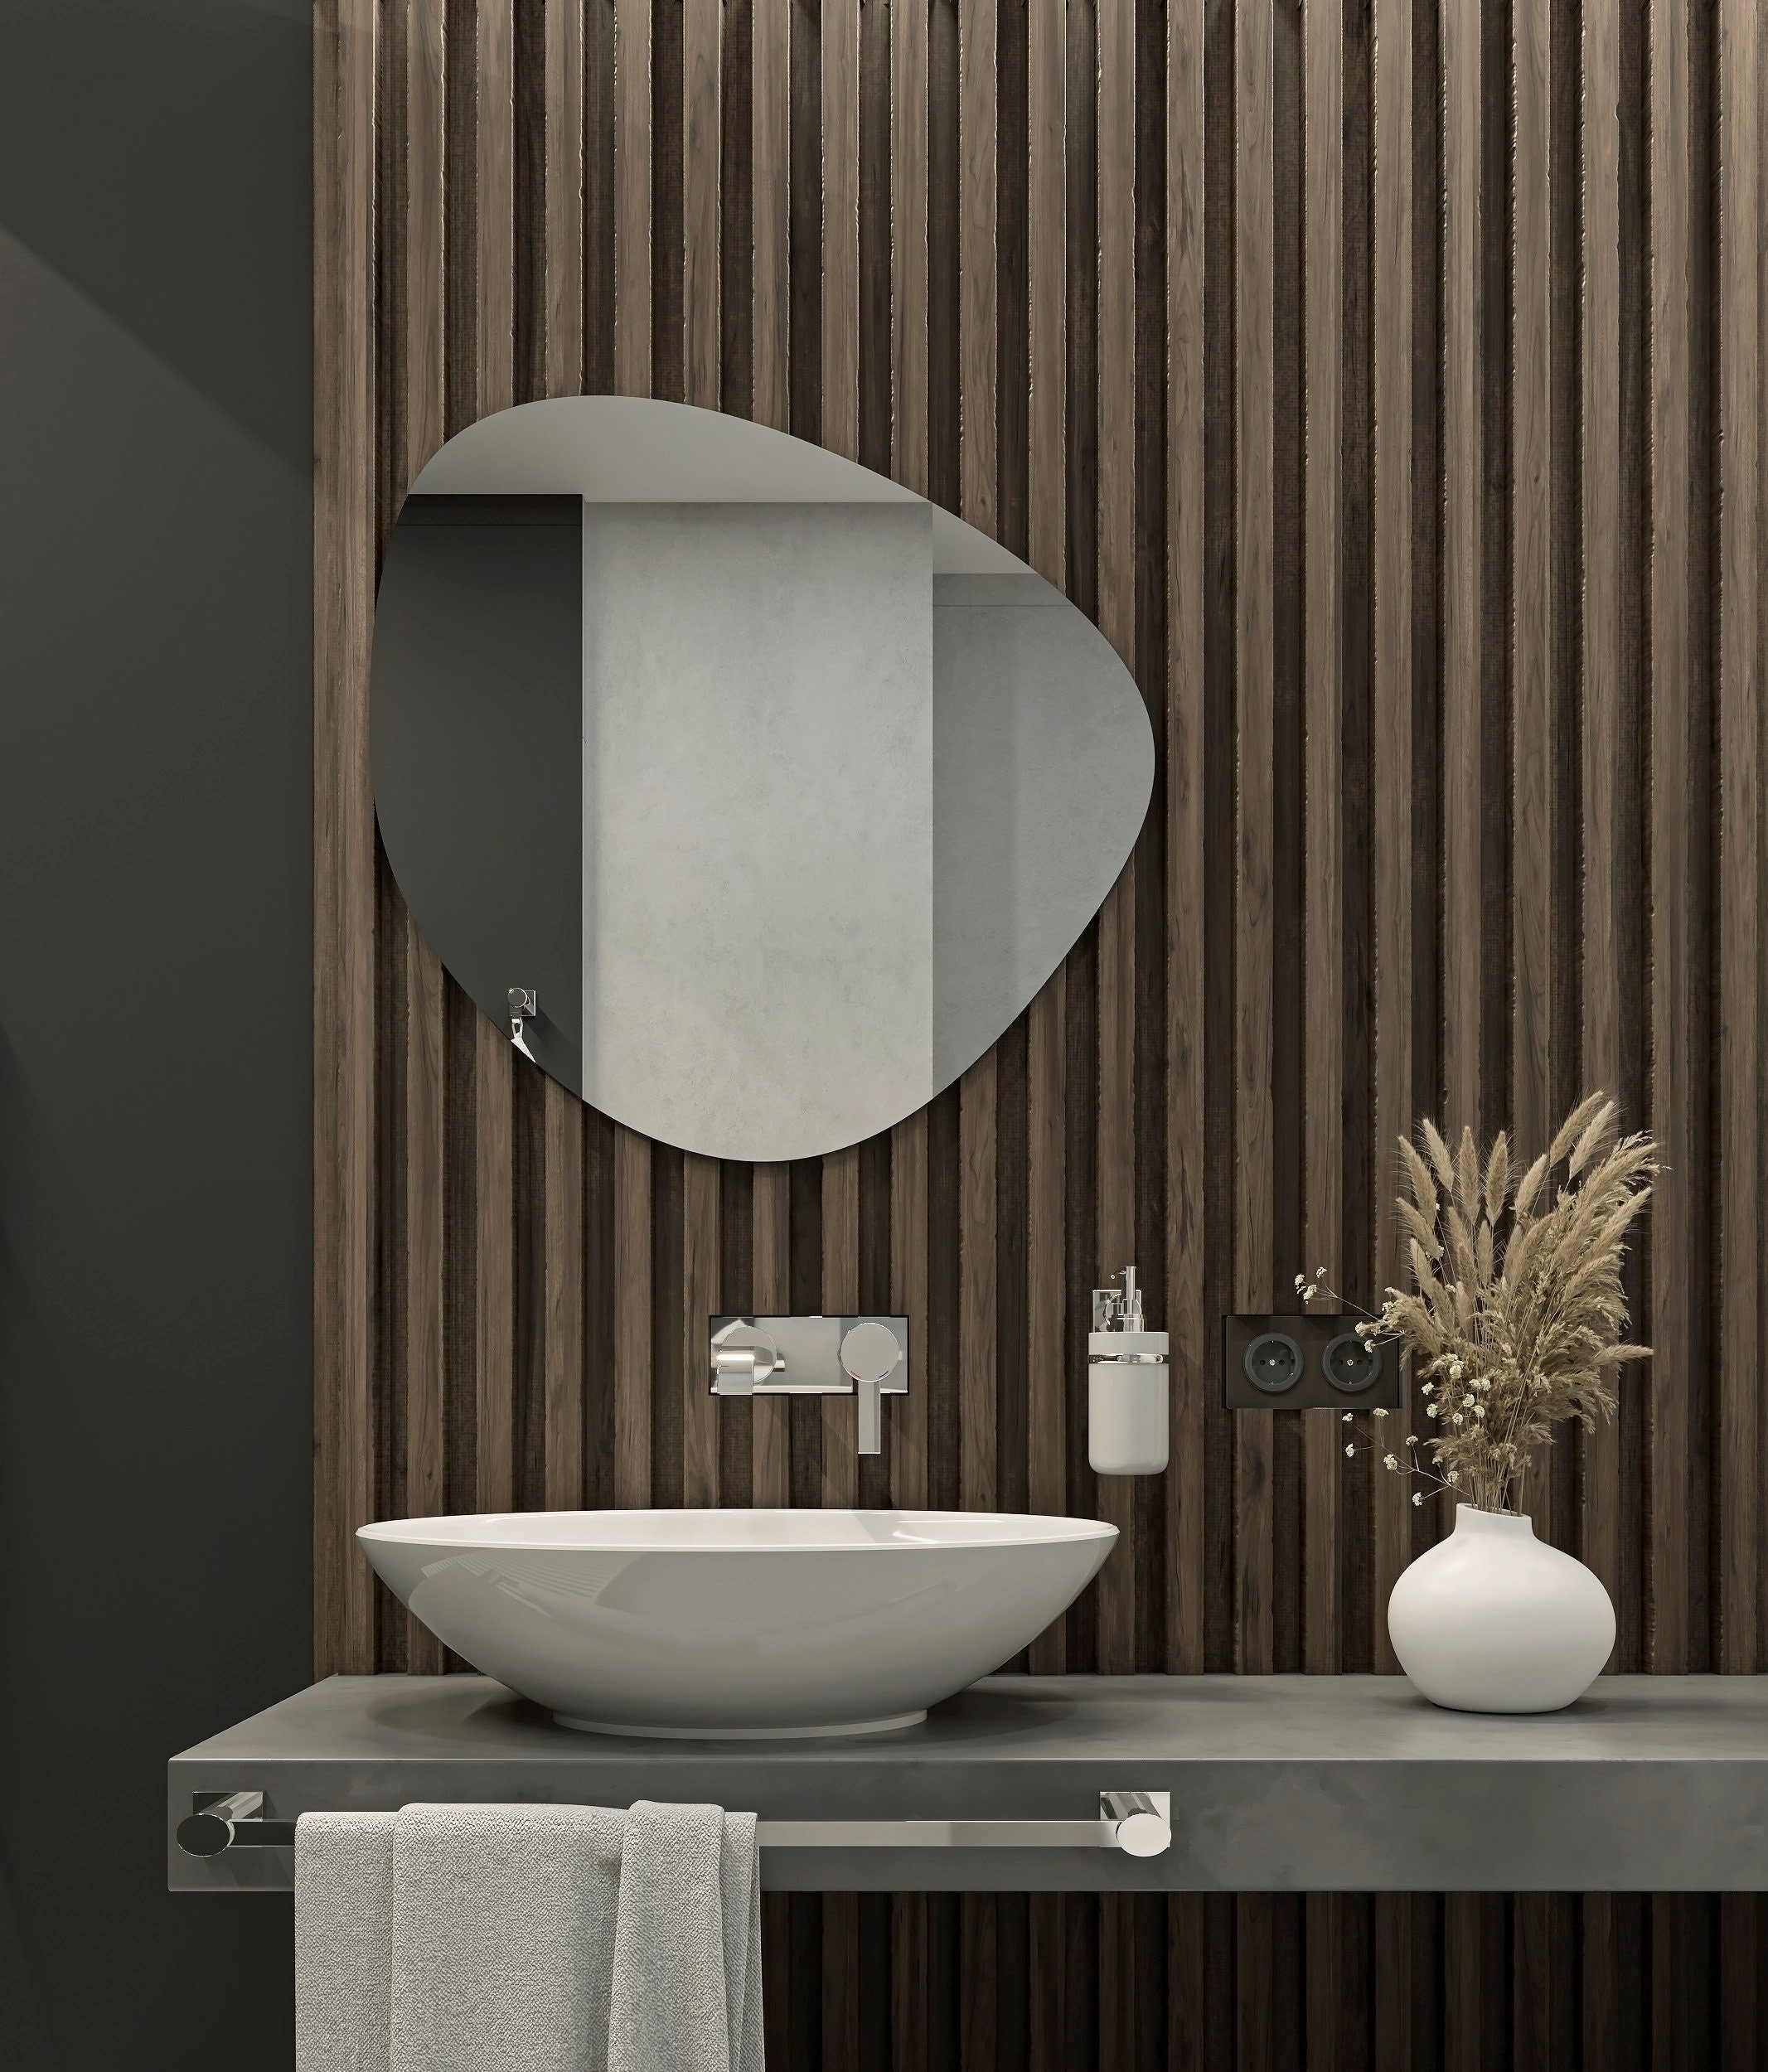 Specchio Organic Specchio asimmetrico irregolare, specchio organico, specchio  da parete, specchio da bagno, Specchio Premium, Design ADDHome® -   Italia